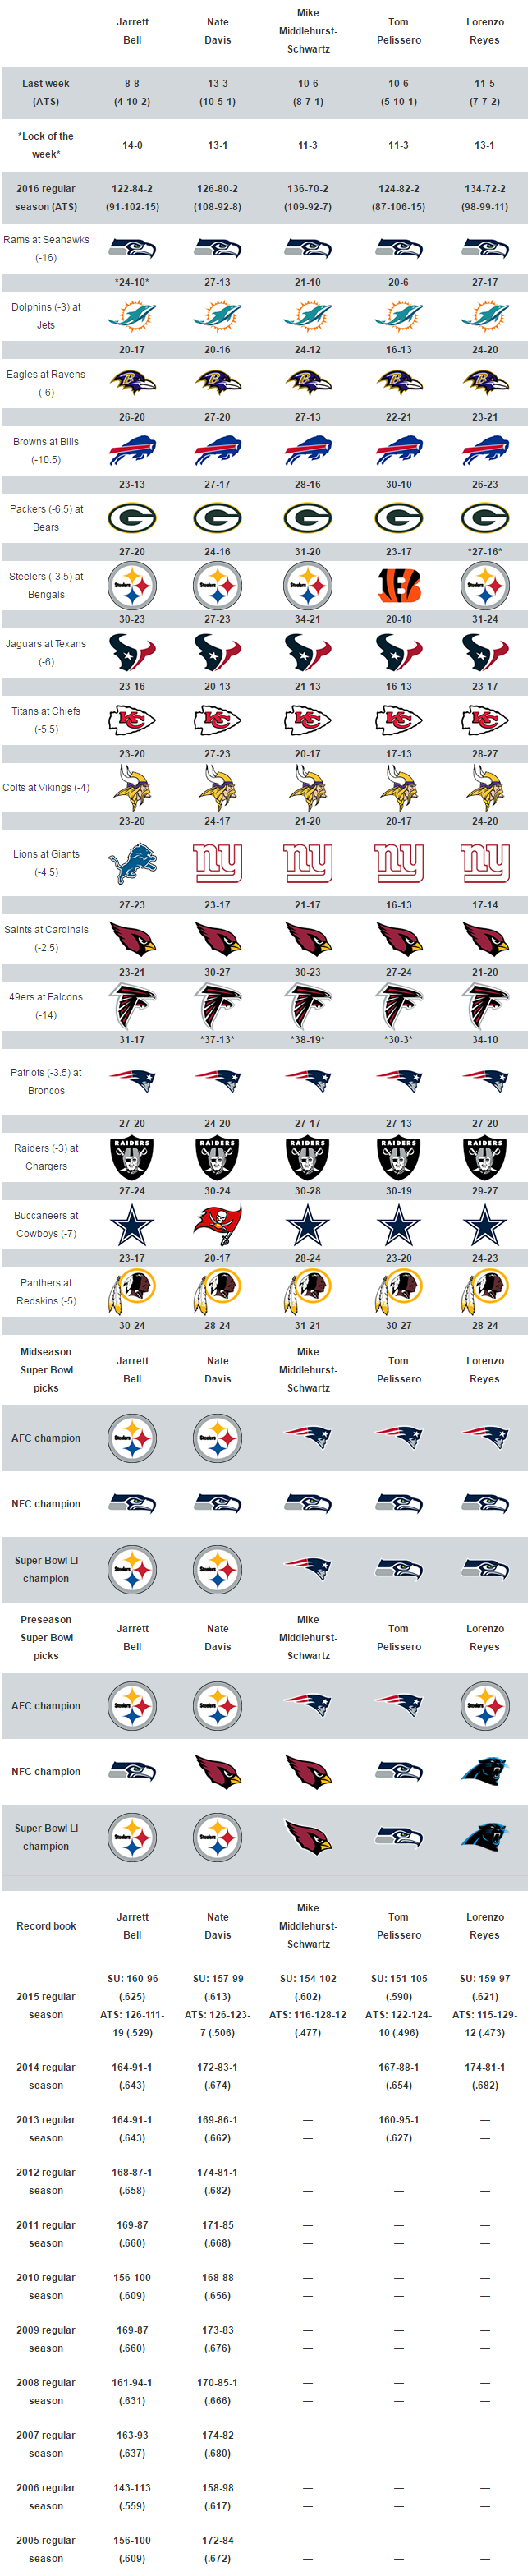 Week 15 NFL picks: Pats or Broncos?